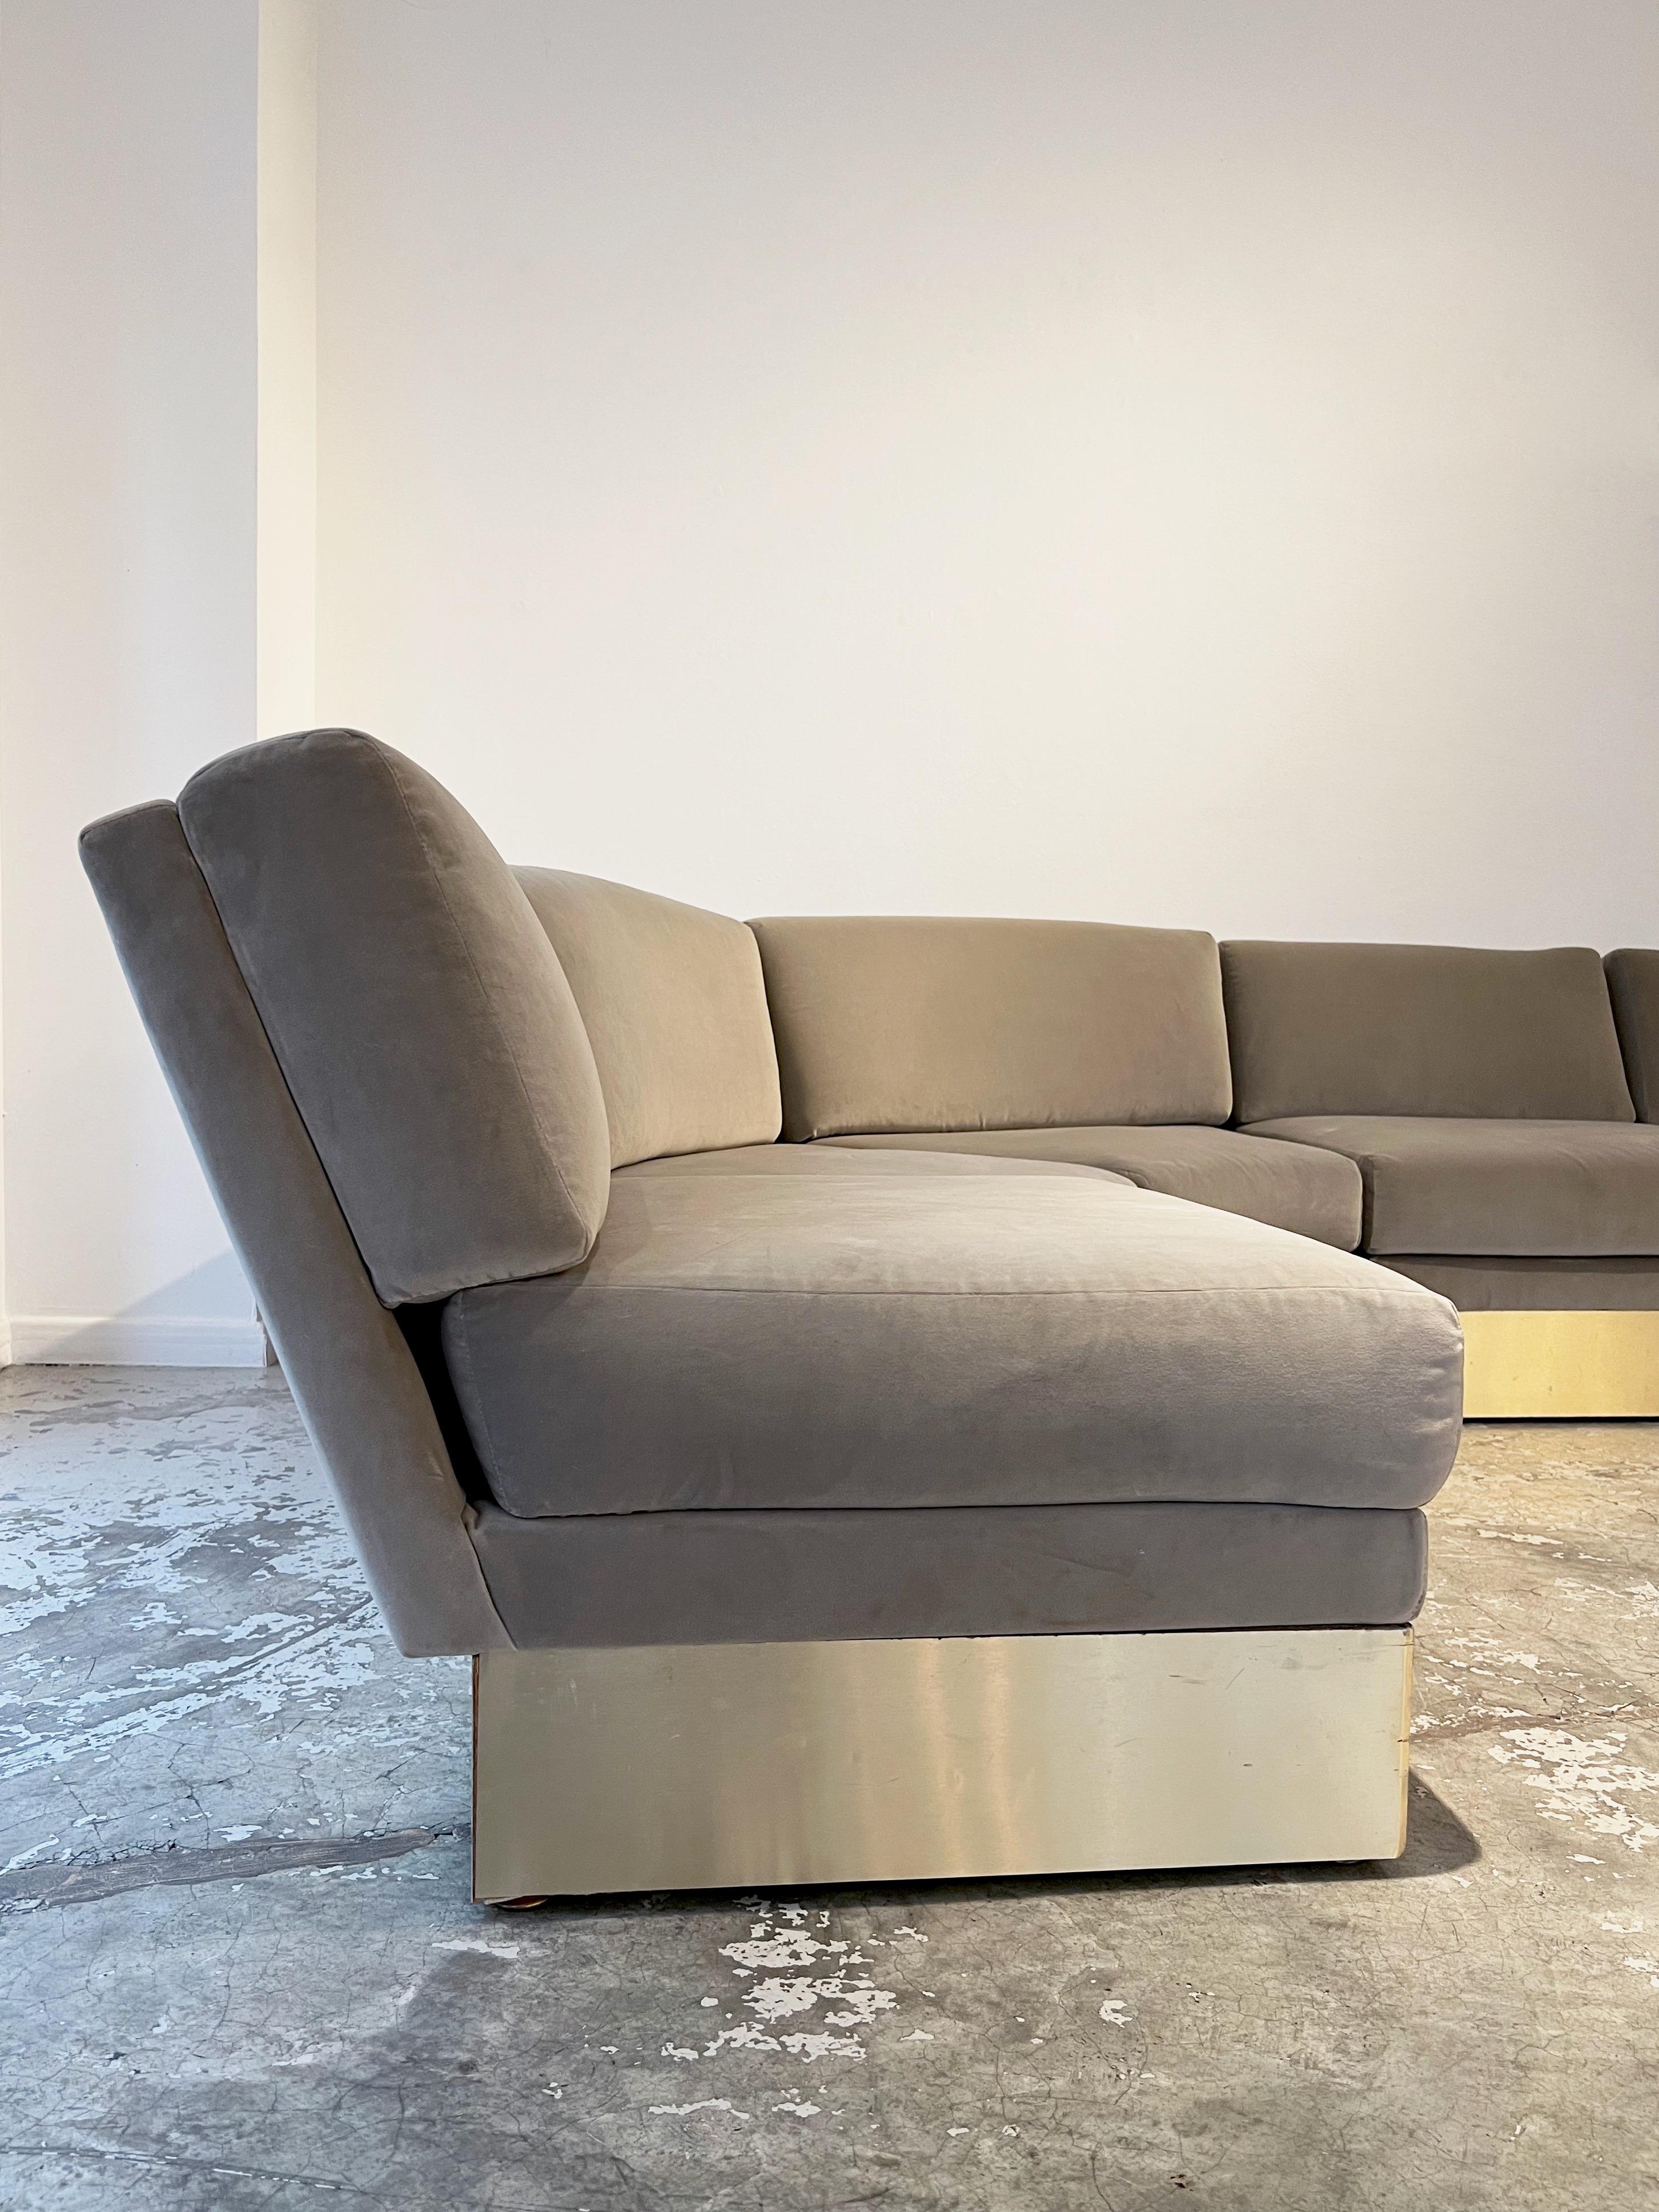 Le California Sofa, conçu par le designer parisien Jacques Charpentier, est un modèle astucieux composé de deux modules d'angle et de trois modules individuels. Ce canapé a été introduit sur le marché en 1970 par la Flat Gallery à Paris et à